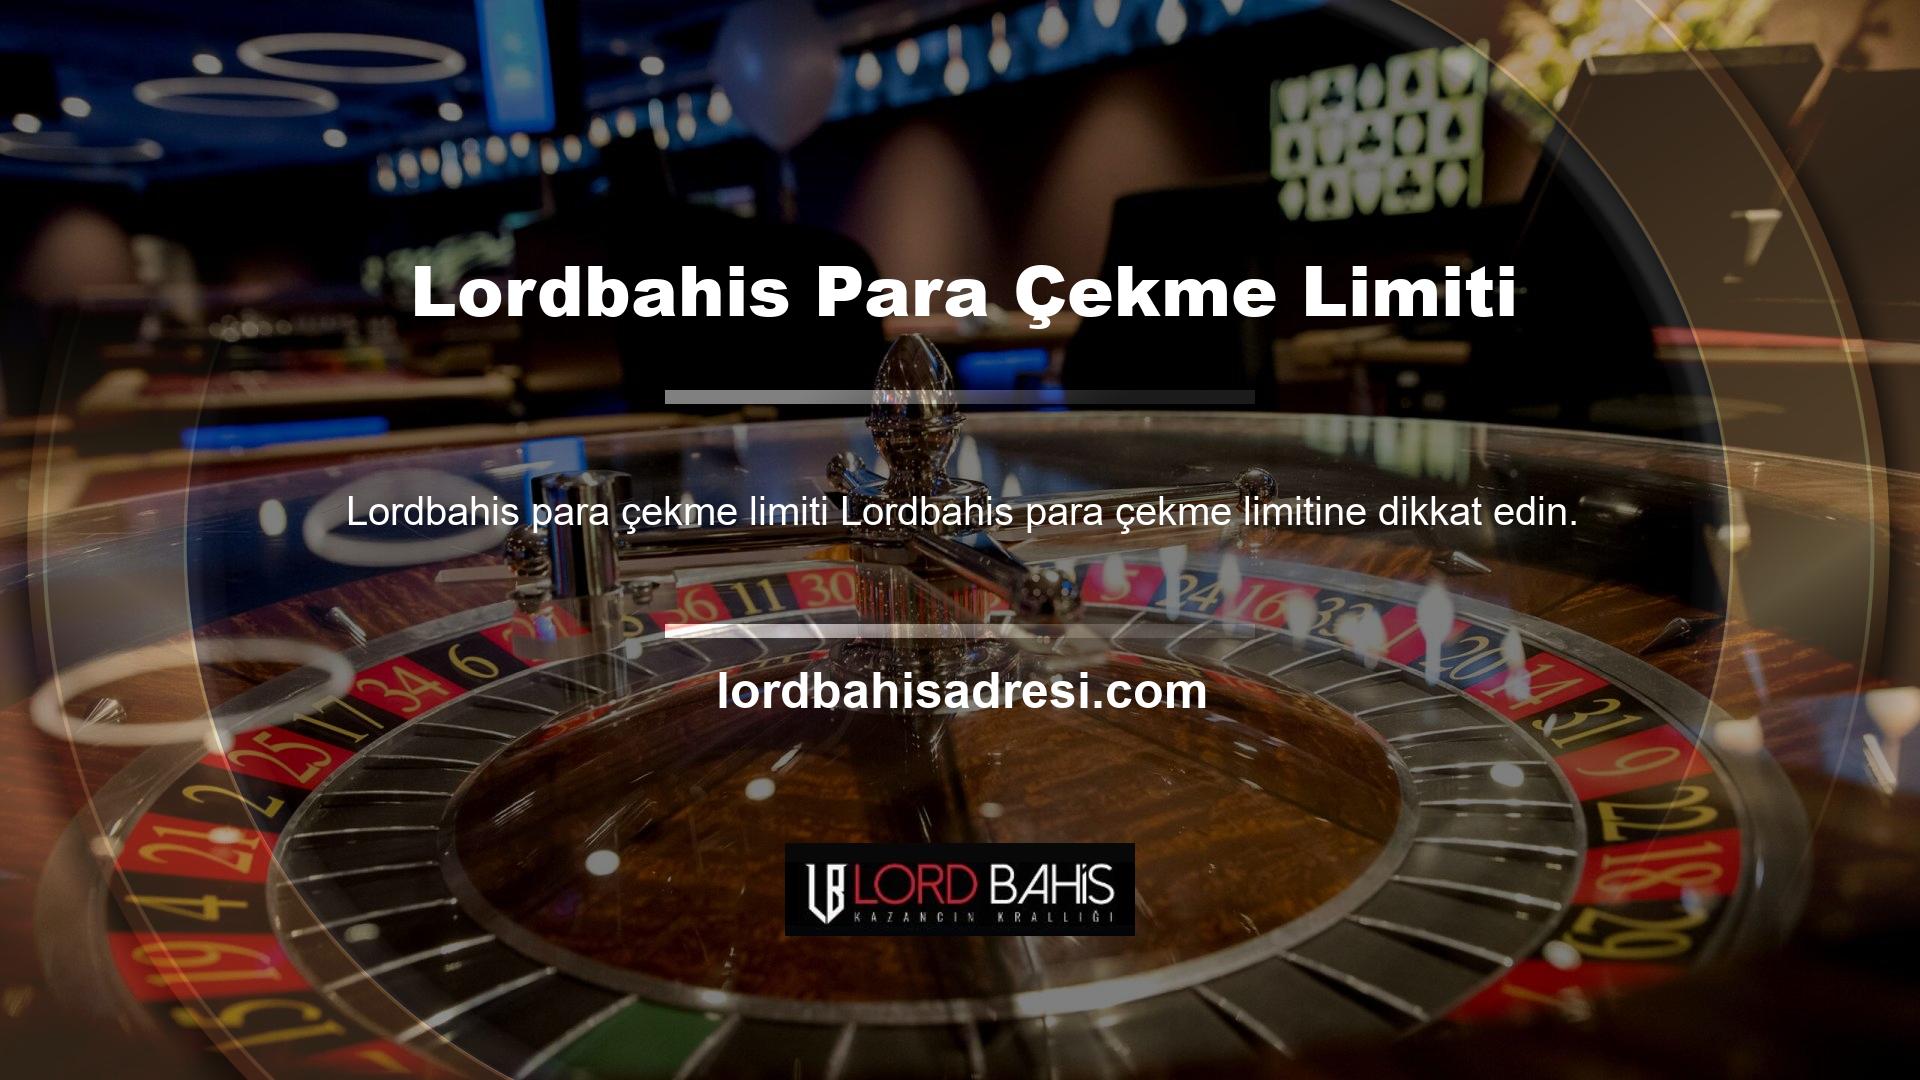 Lordbahis web sitesi, ödeme yöntemlerini işlemek için ayrı bir ödeme bölümü gerektirir